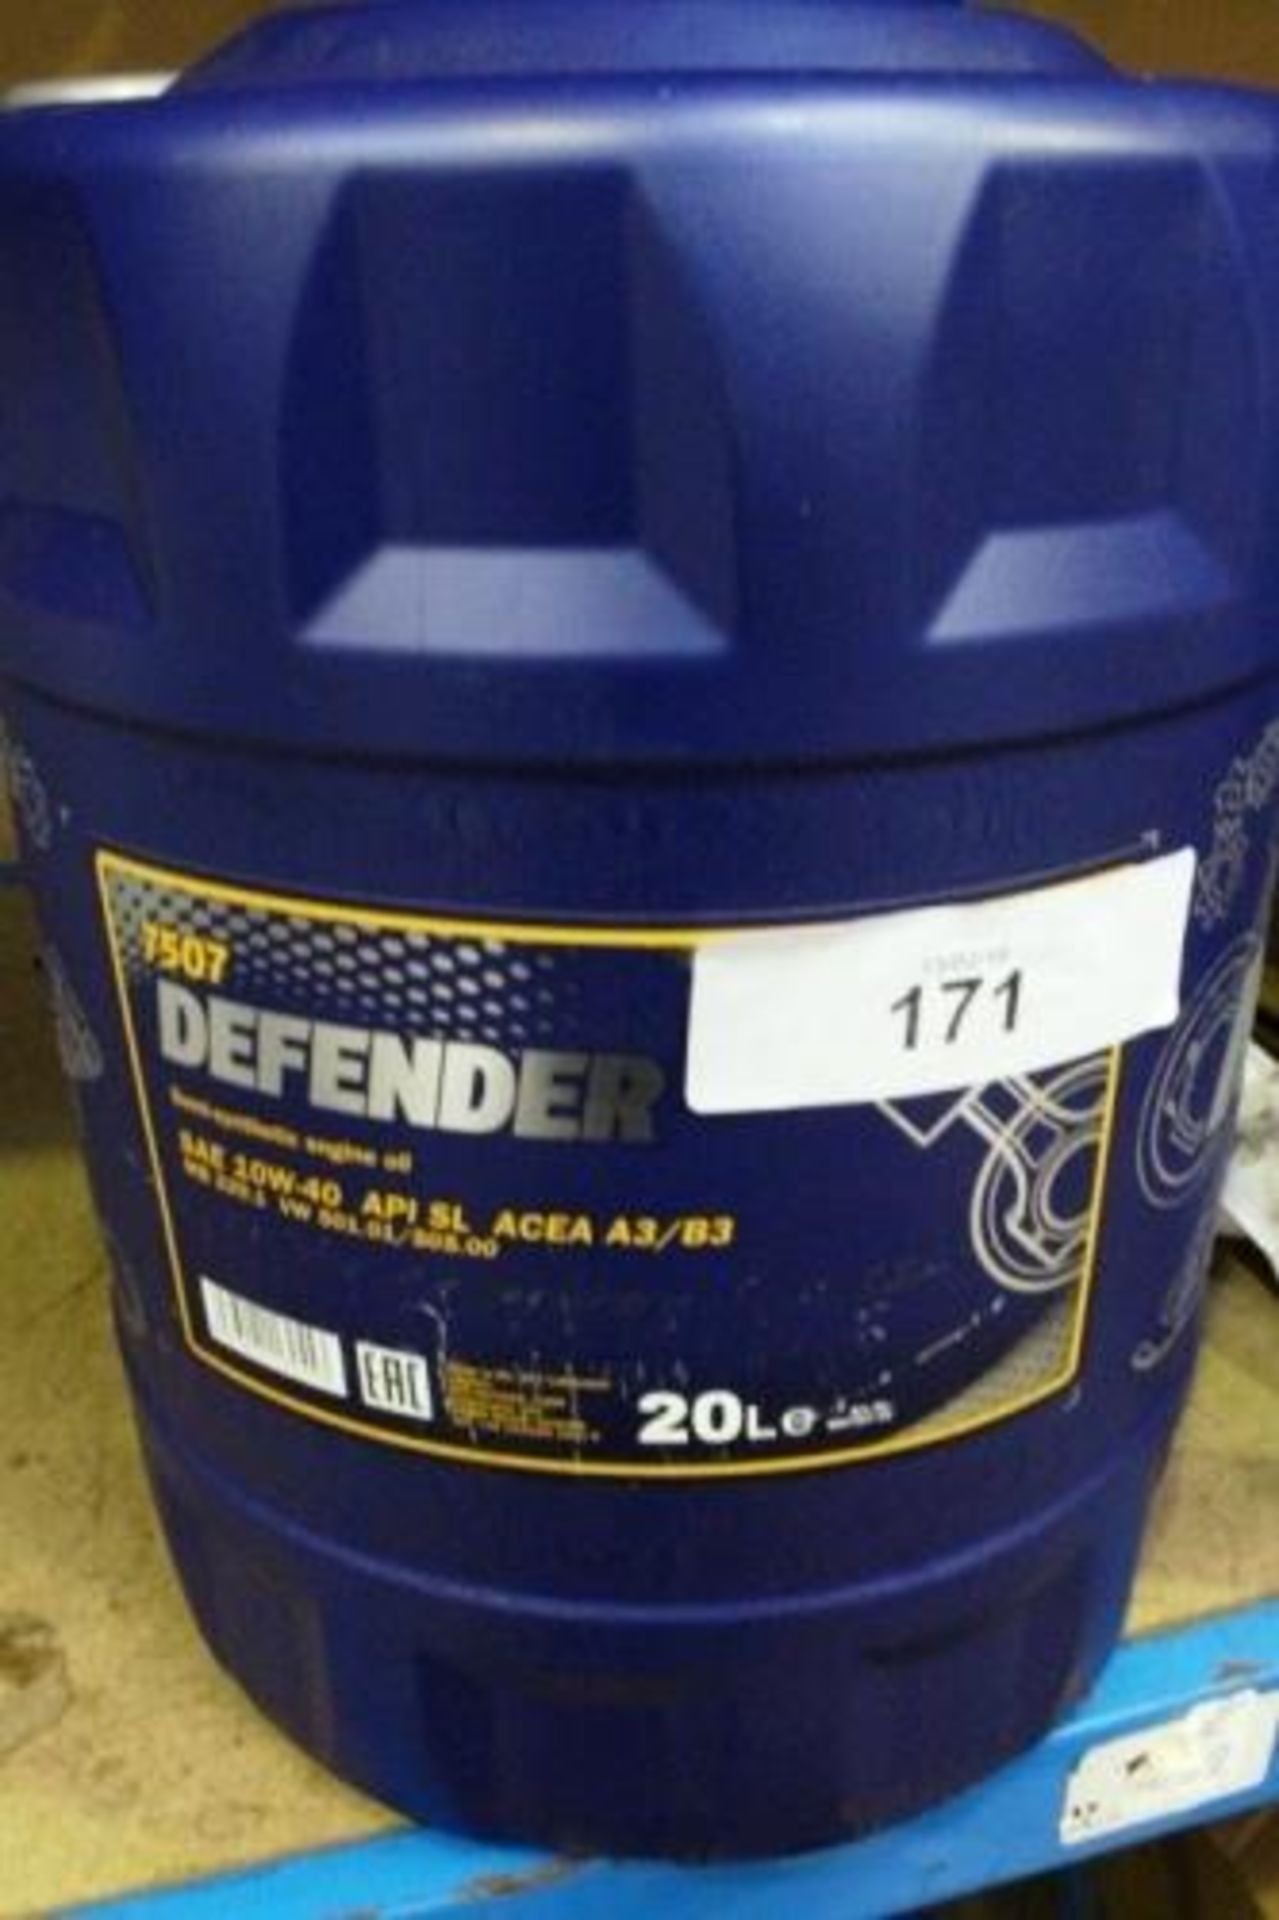 A 20ltr bottle of Manol Defender engine oil, Ref: 10W-40 API SL (ESB11)